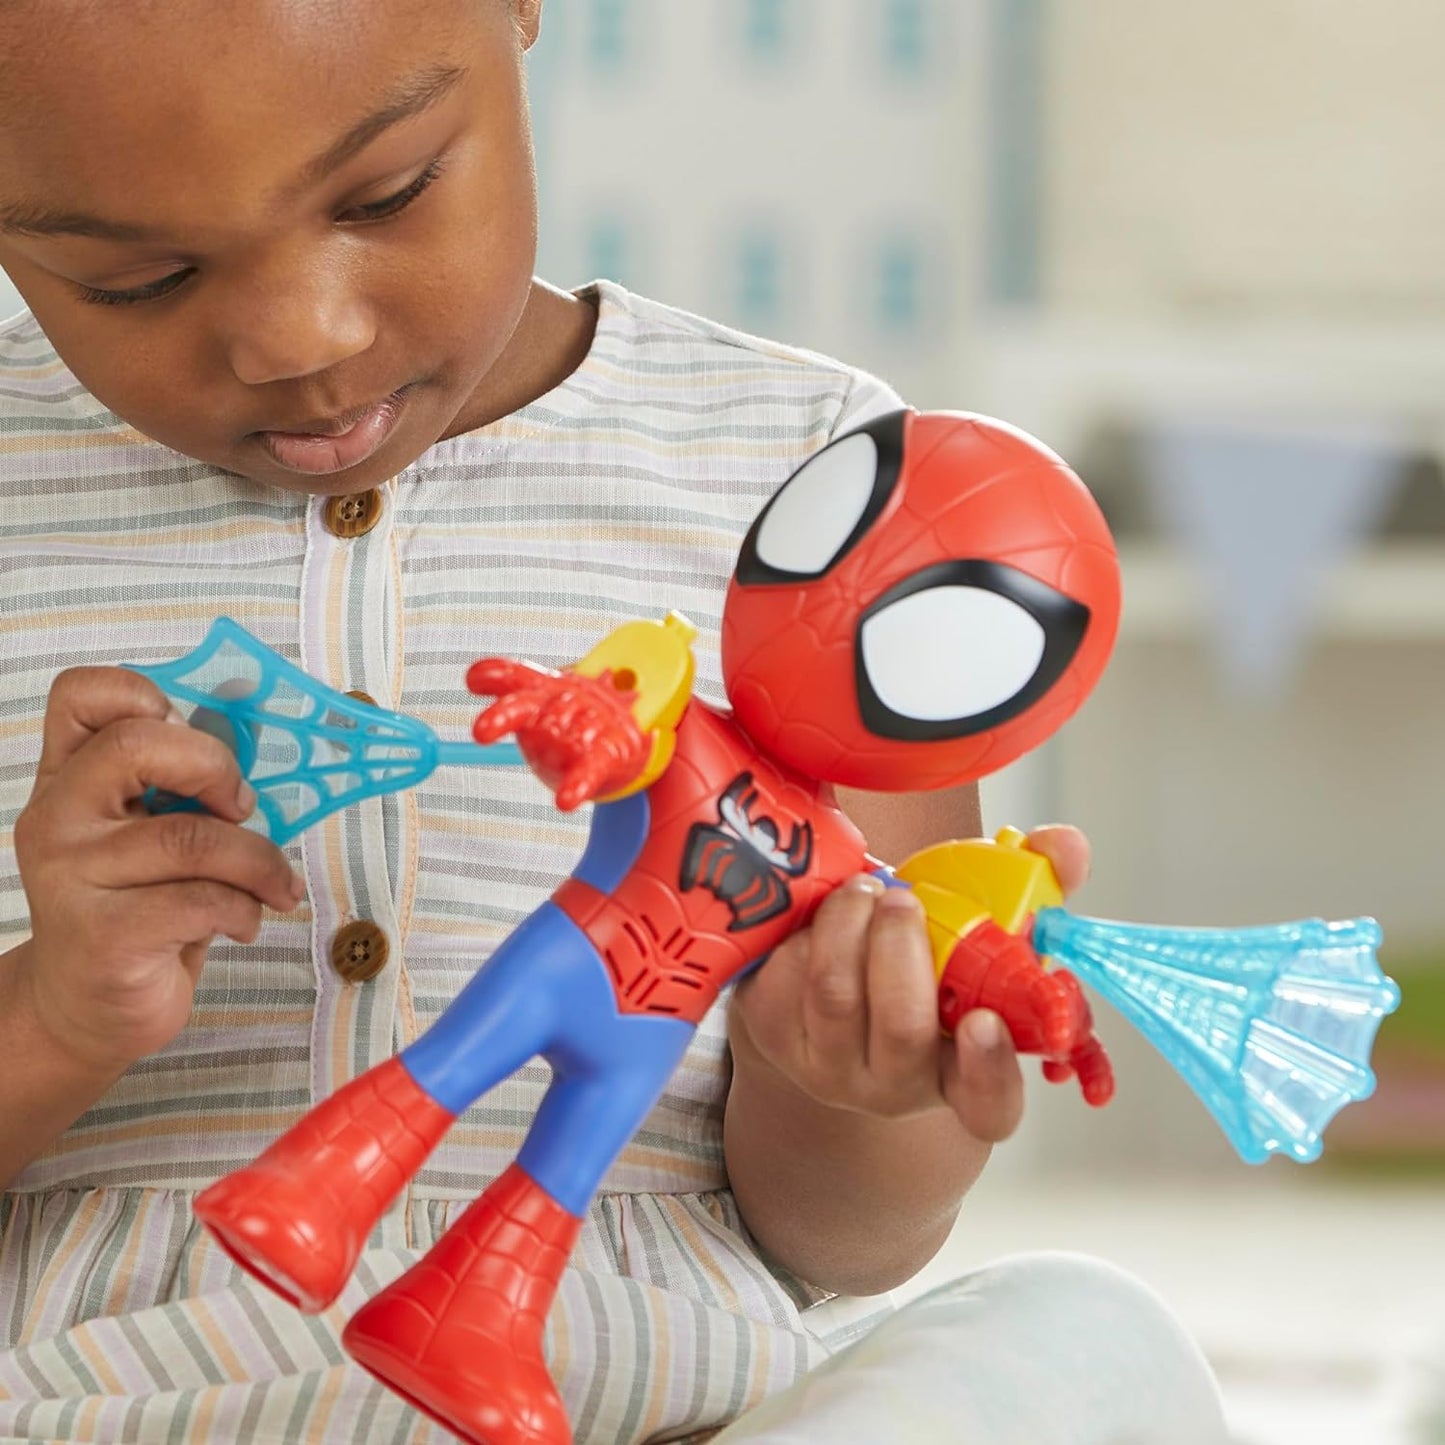 SPIDEY AND HIS AMAZING FRIENDS F83175E0 Marvel Electronic Suit Up Spidey, boneco de ação de 10 polegadas, brinquedos pré-escolares para crianças de 3 anos ou mais